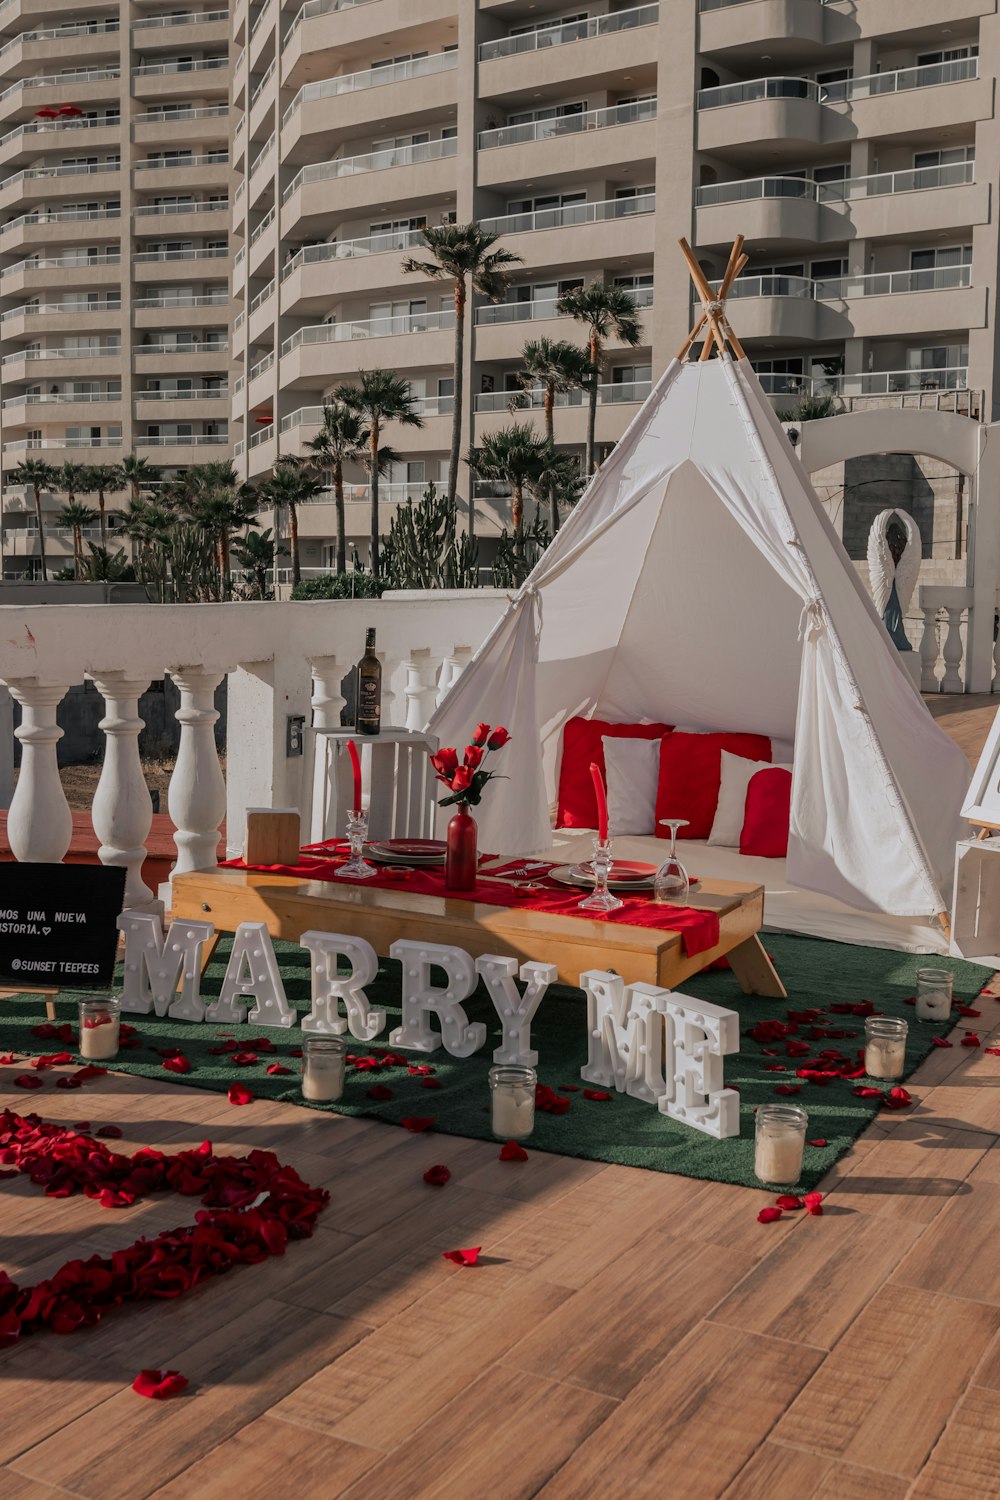 uma tenda montada para uma festa com pétalas de rosas vermelhas no chão